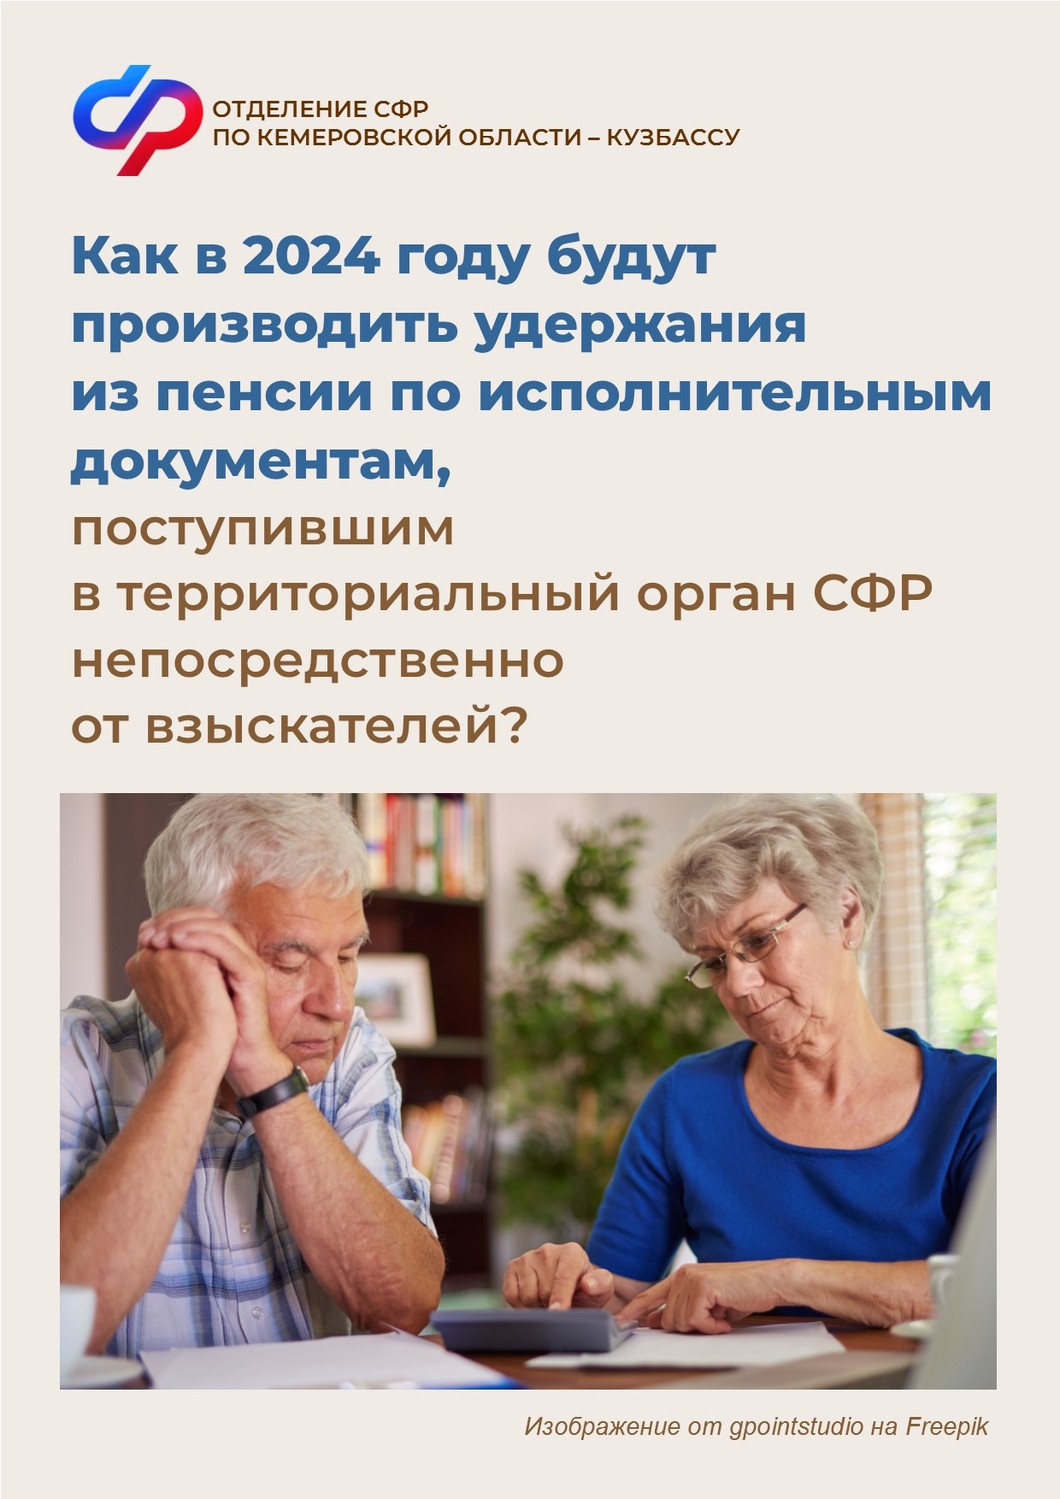 Как в 2024 году будут производить удержания из пенсии по исполнительным документам, поступившим в ОСФР непосредственно от взыскателей?